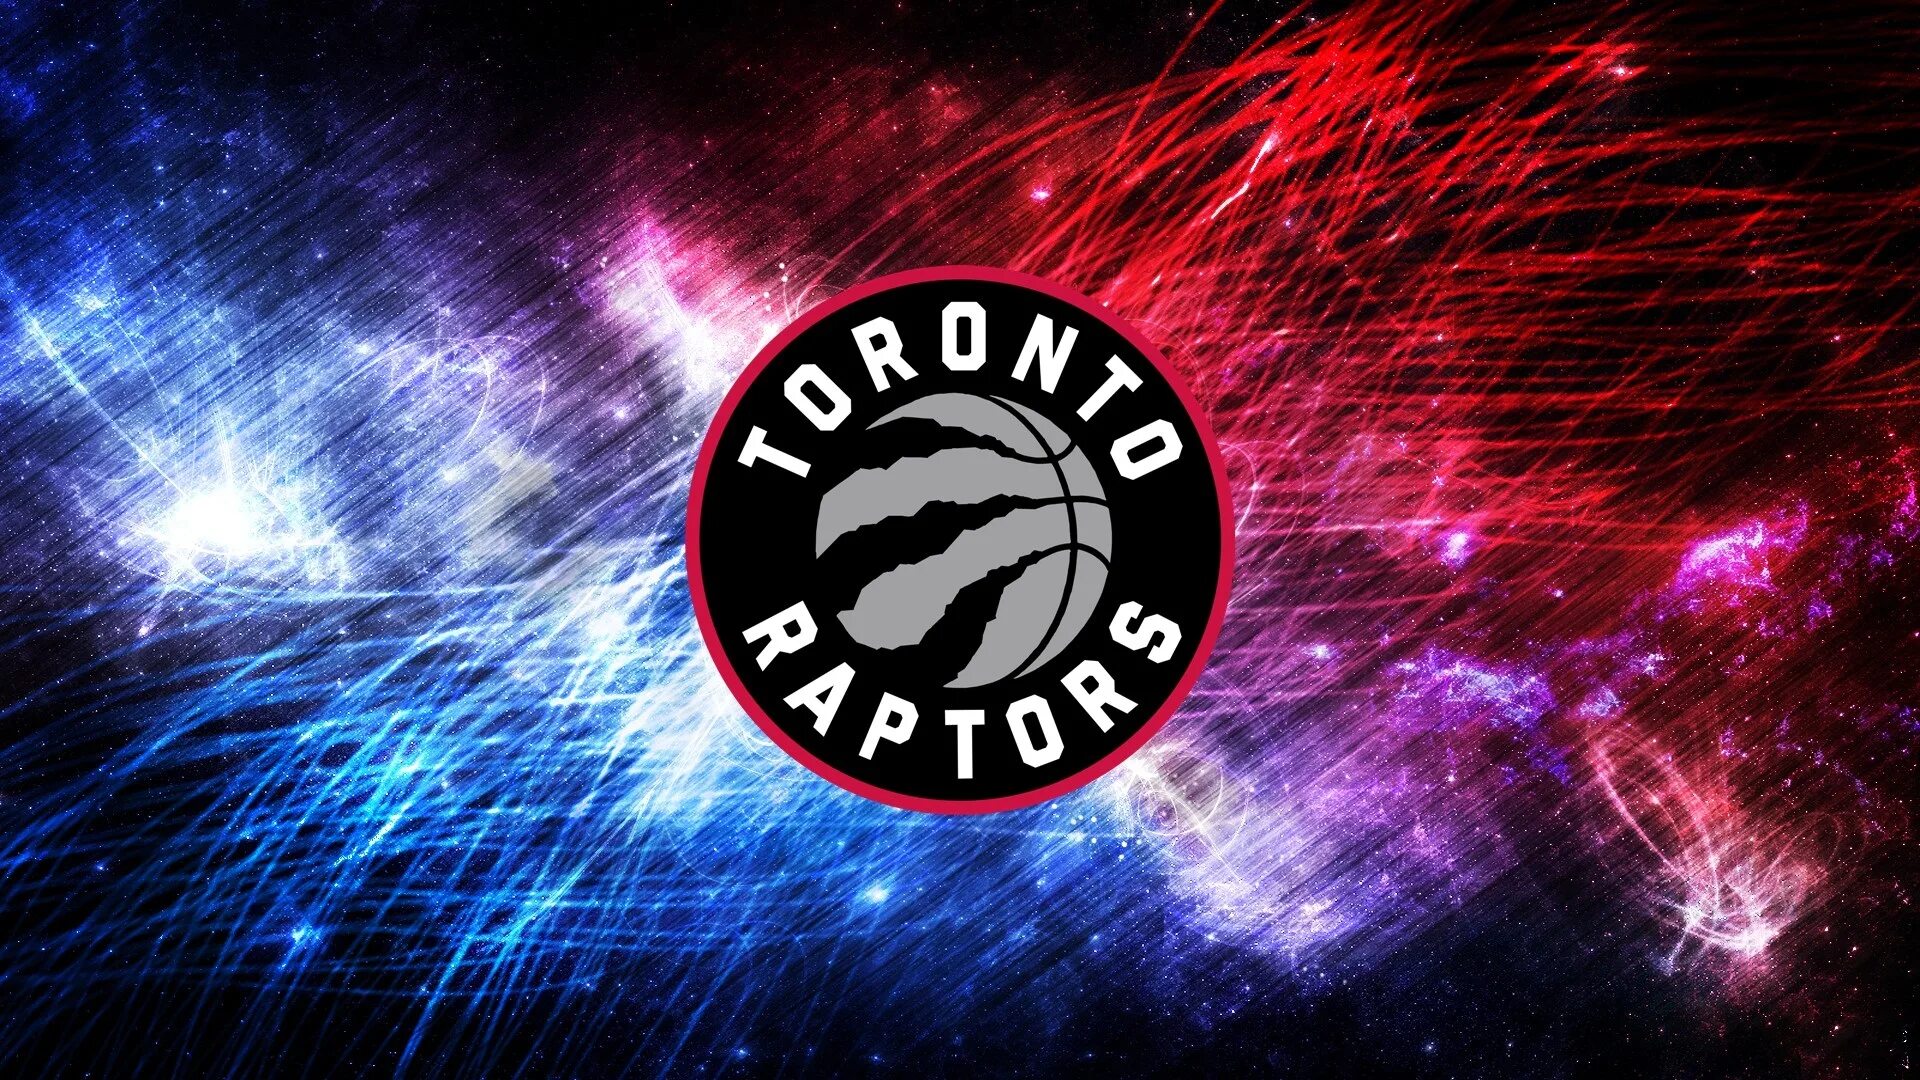 Toronto raptors. Торонто Рэпторс логотип. Торонто Рэпторс обои. НБА – Торонто Рэпторс лого. Raptor обои.